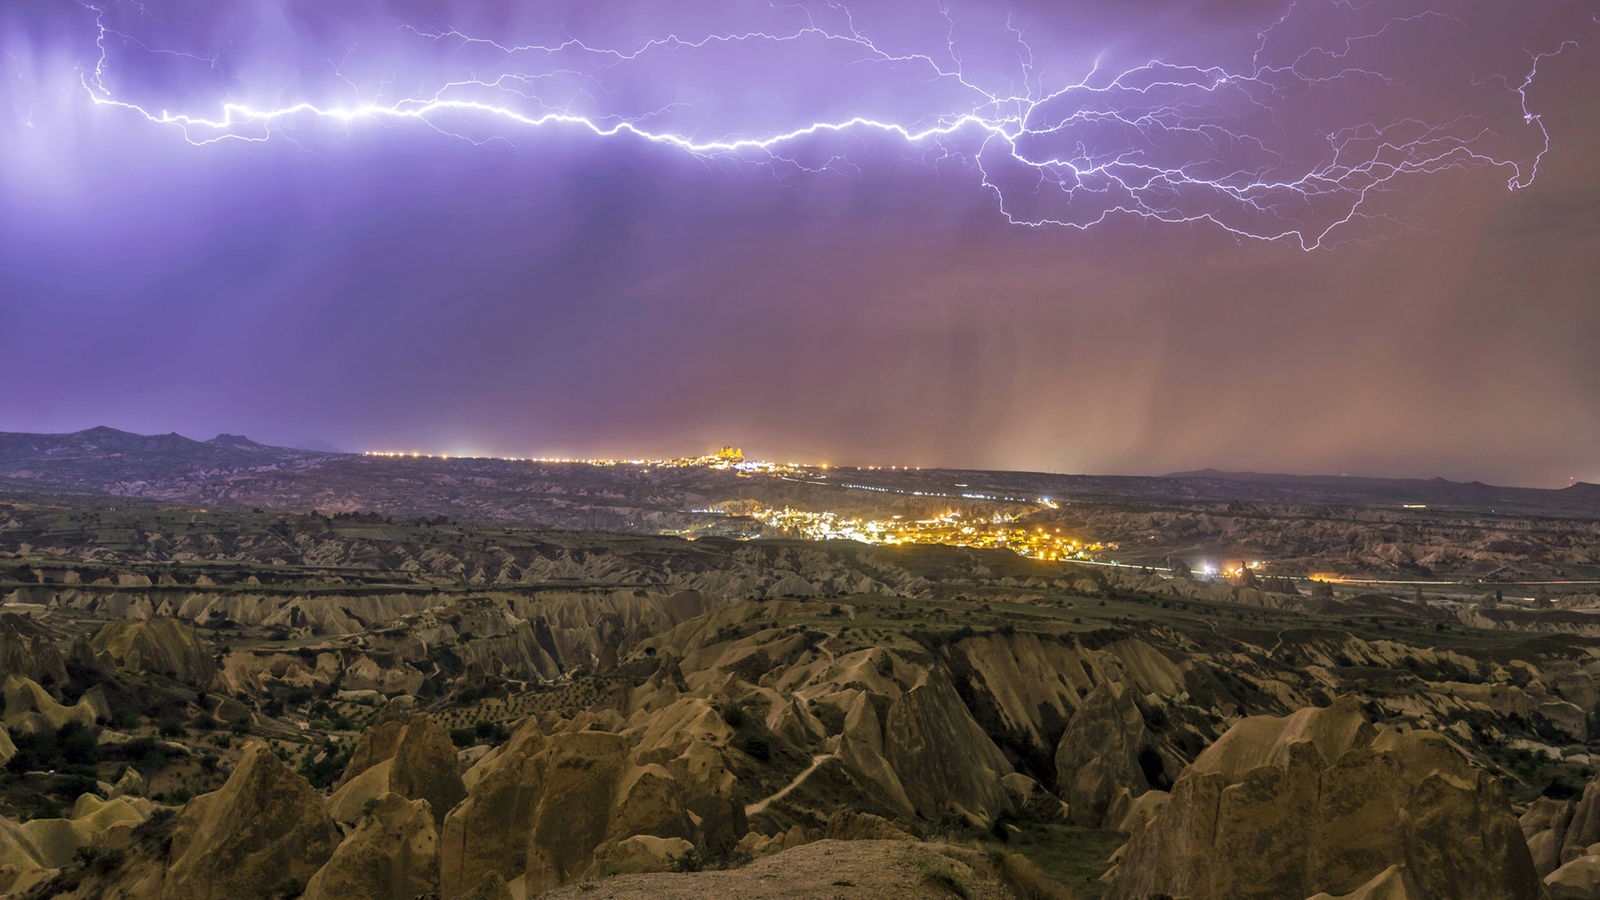 Blitze über der Felsenlandschaft von Kapadokien, im Hintergrund eine beleuchtete Stadt